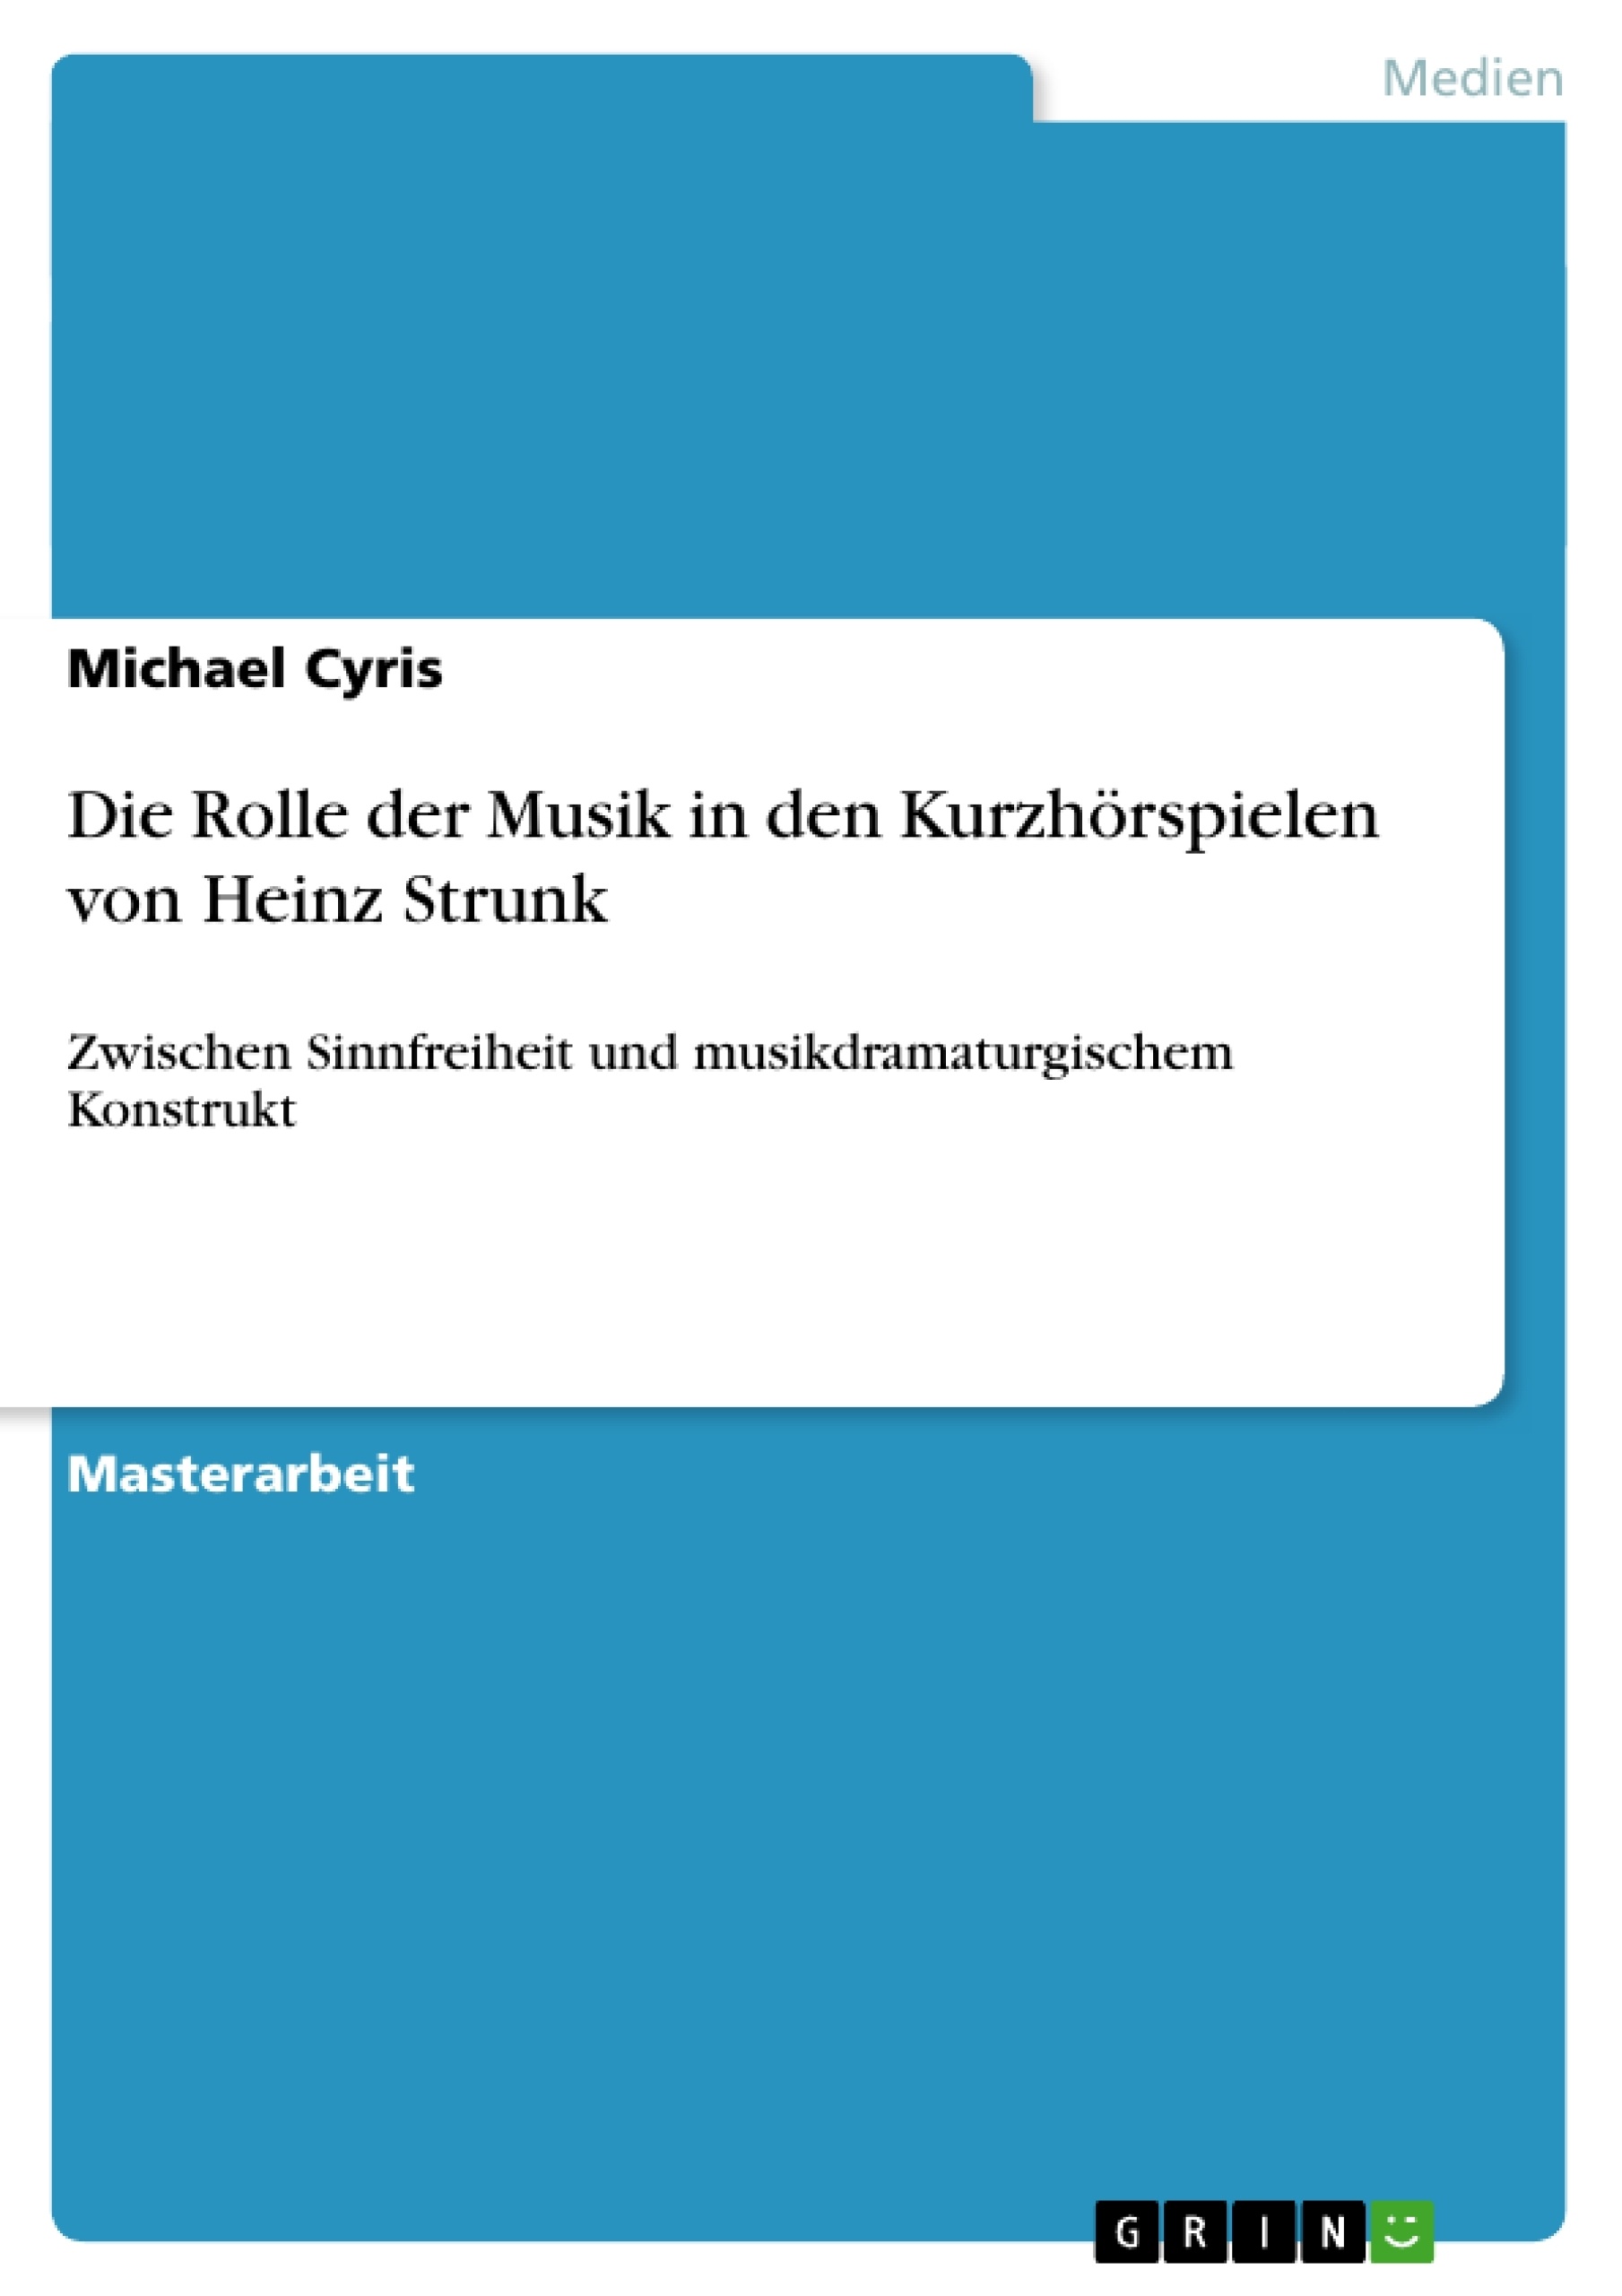 Titre: Die Rolle der Musik in den Kurzhörspielen von Heinz Strunk